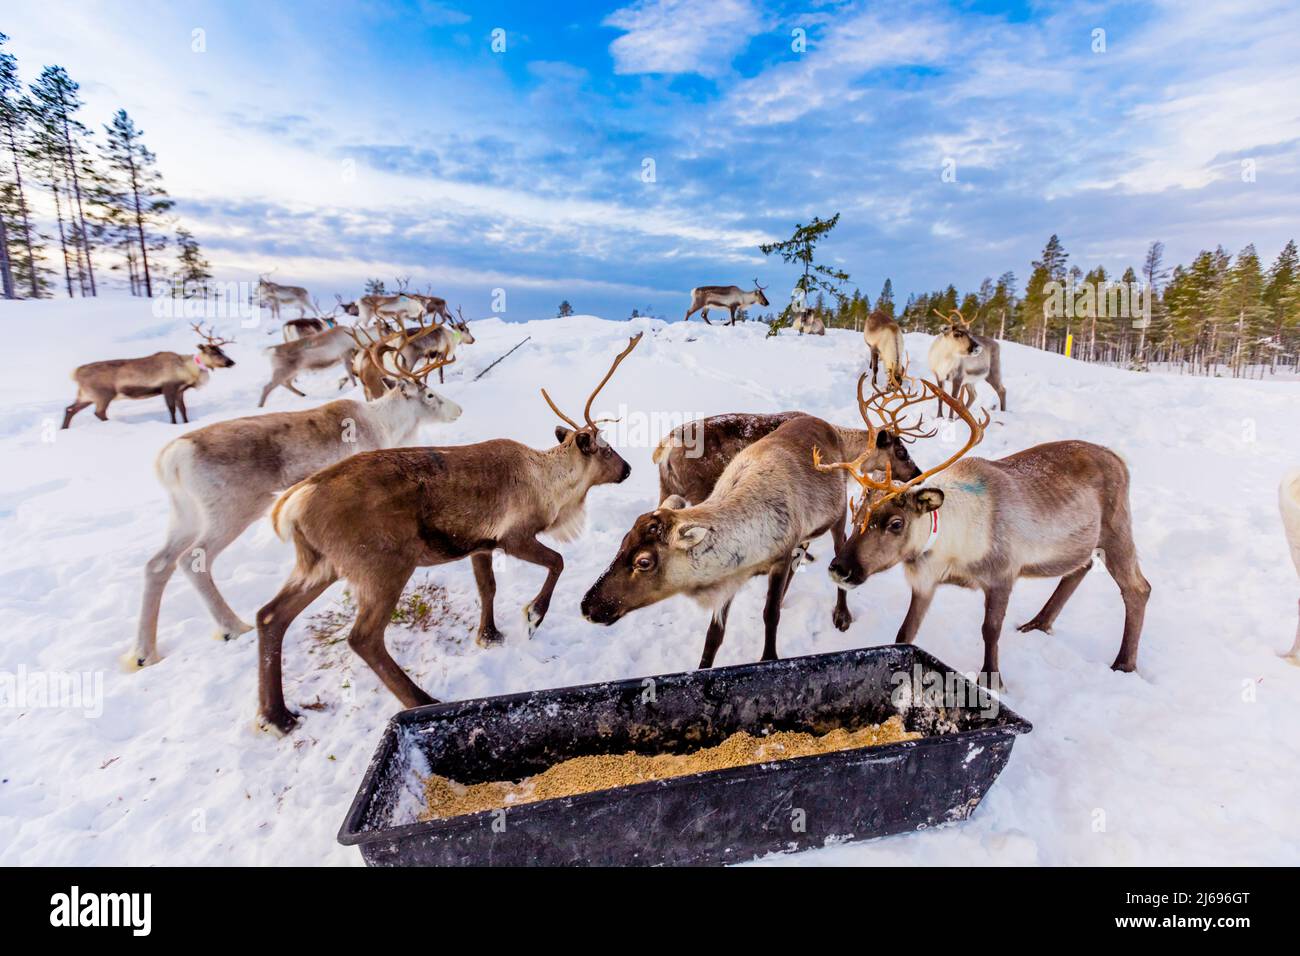 Herding reindeer in beautiful snowy landscape of Jorn, Sweden, Scandinavia Stock Photo